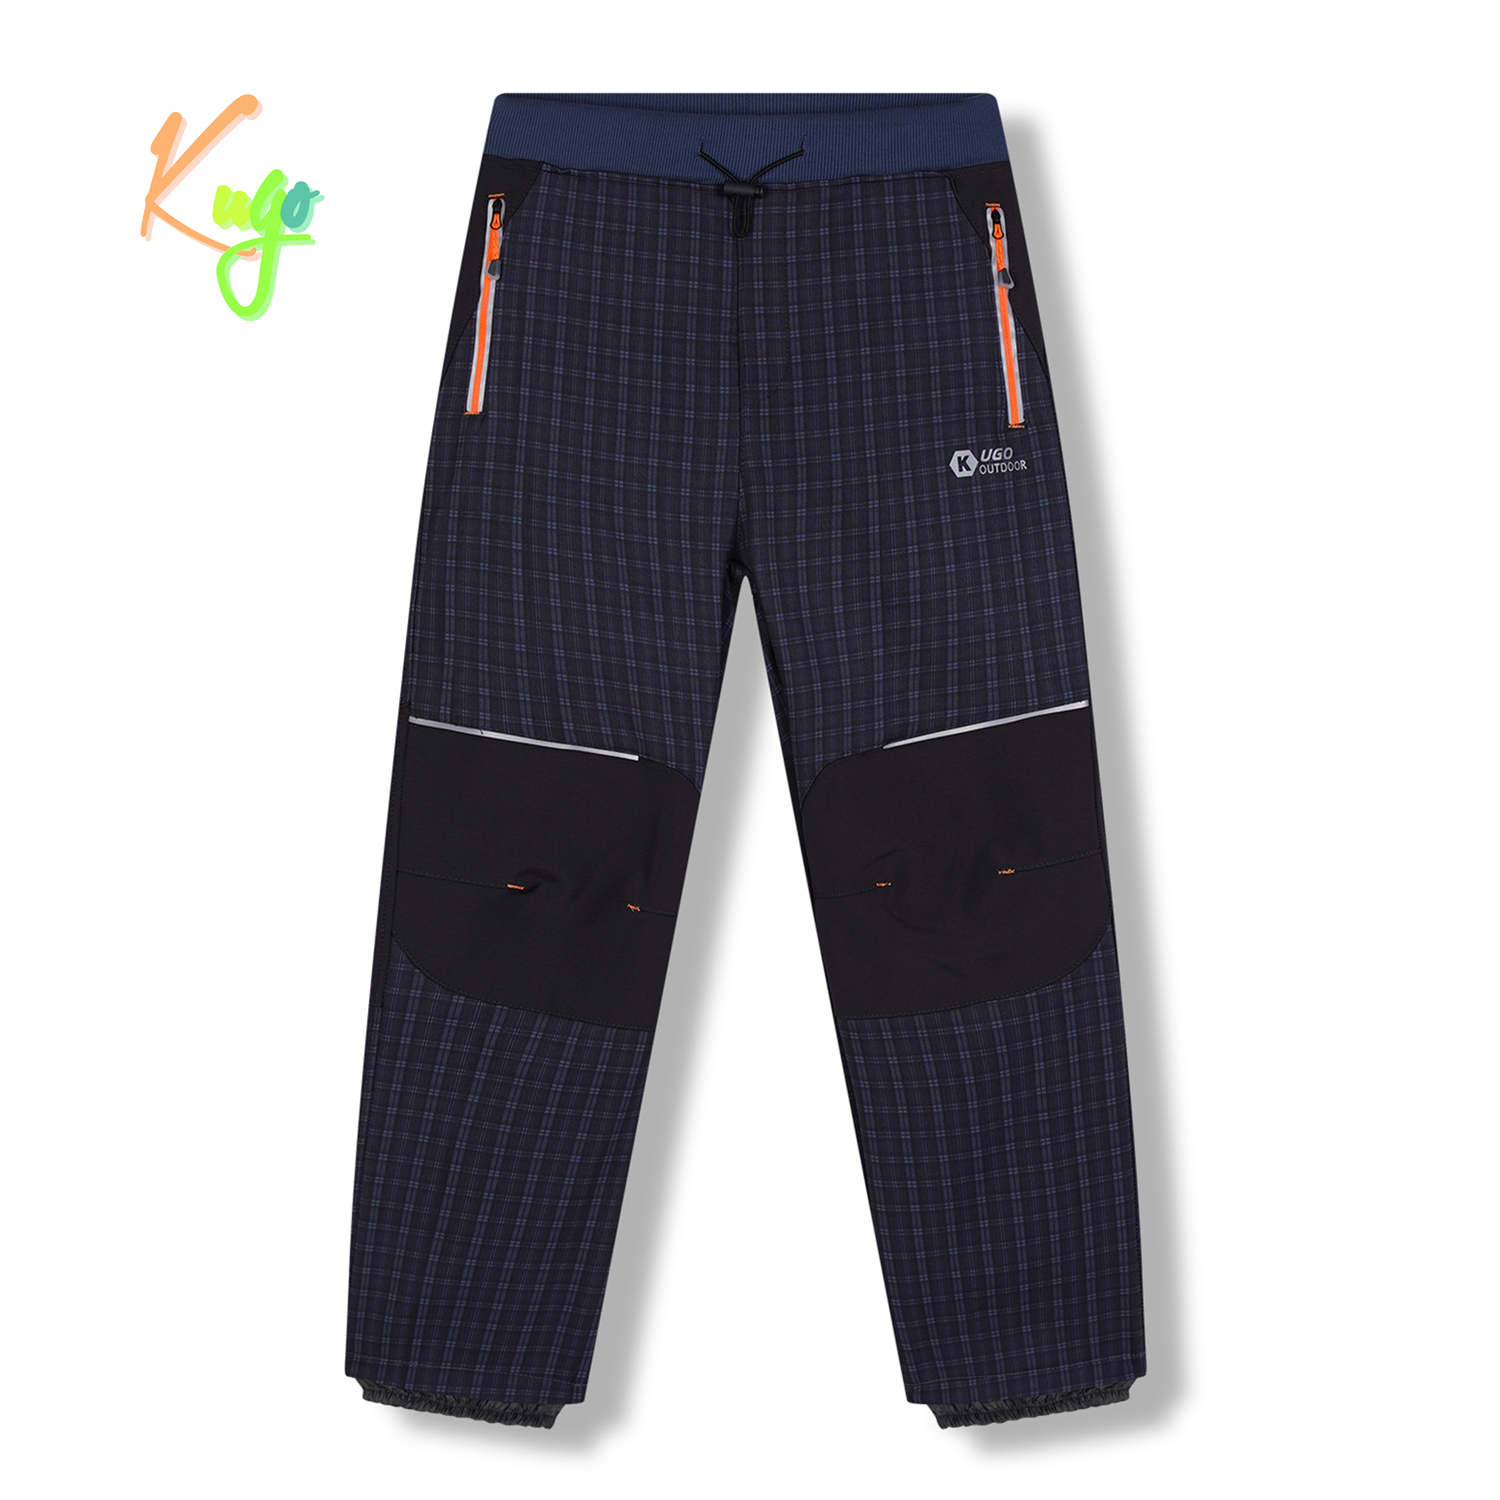 Chlapecké softshellové kalhoty, zateplené - KUGO HK5631, šedomodrá / oranžové zipy Barva: Šedá, Velikost: 140